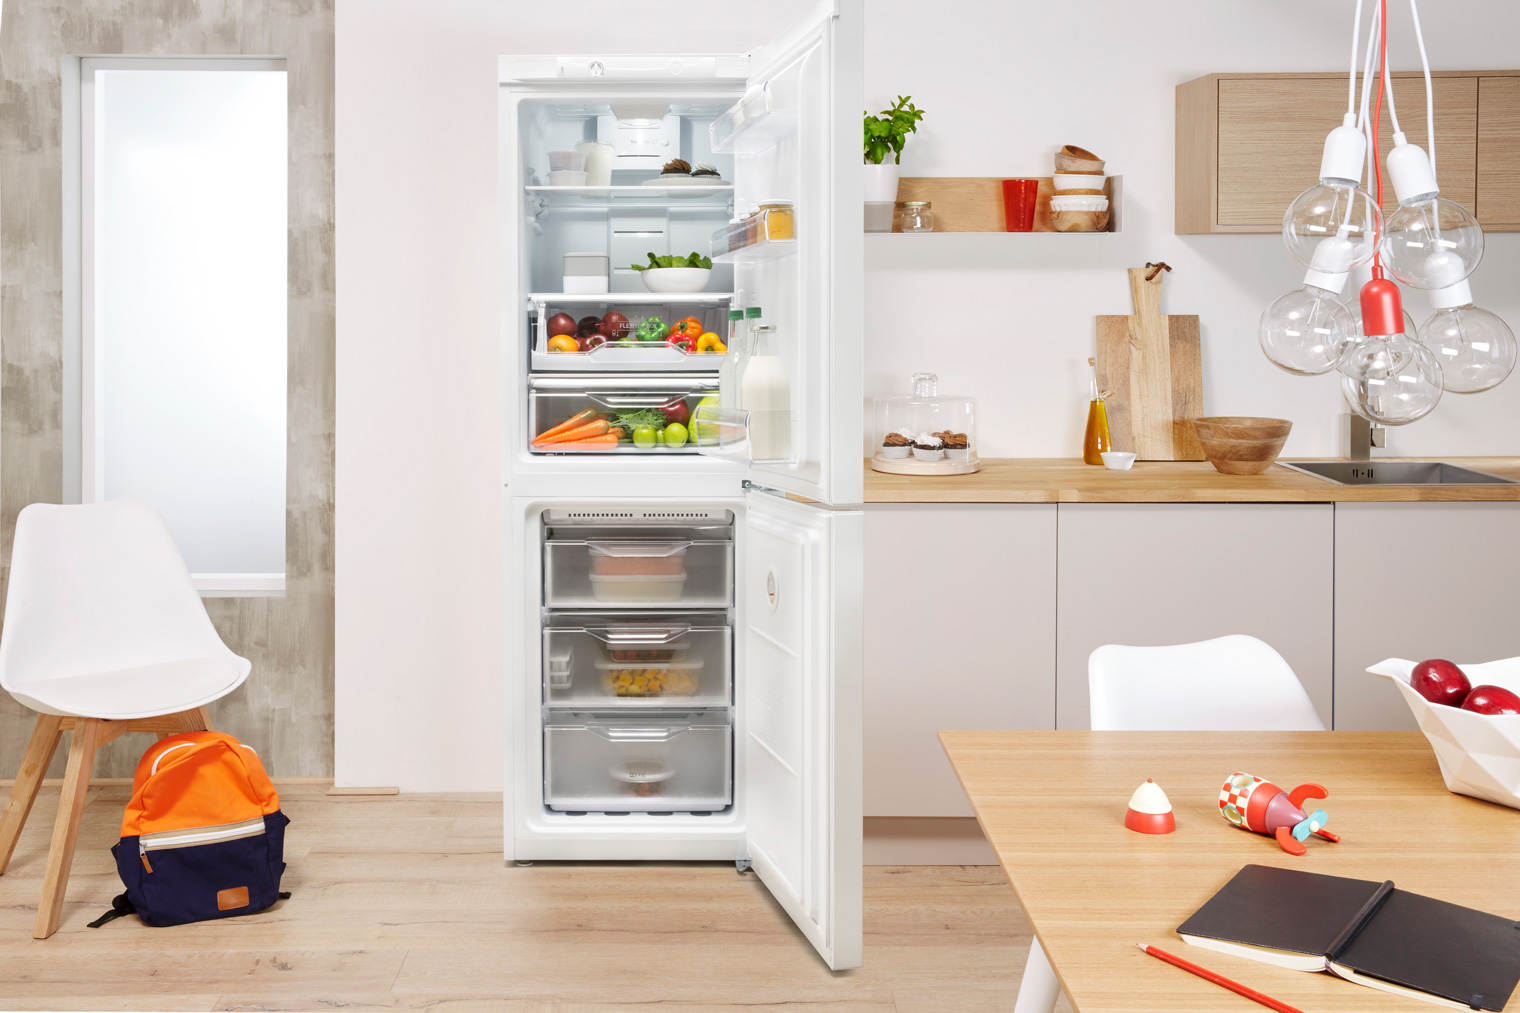 Двокамерний холодильник INDESIT LI8 S1 W + кредит 0% на 10 міс або сертифікат на 100 грн у подарунок + безплатна доставка!